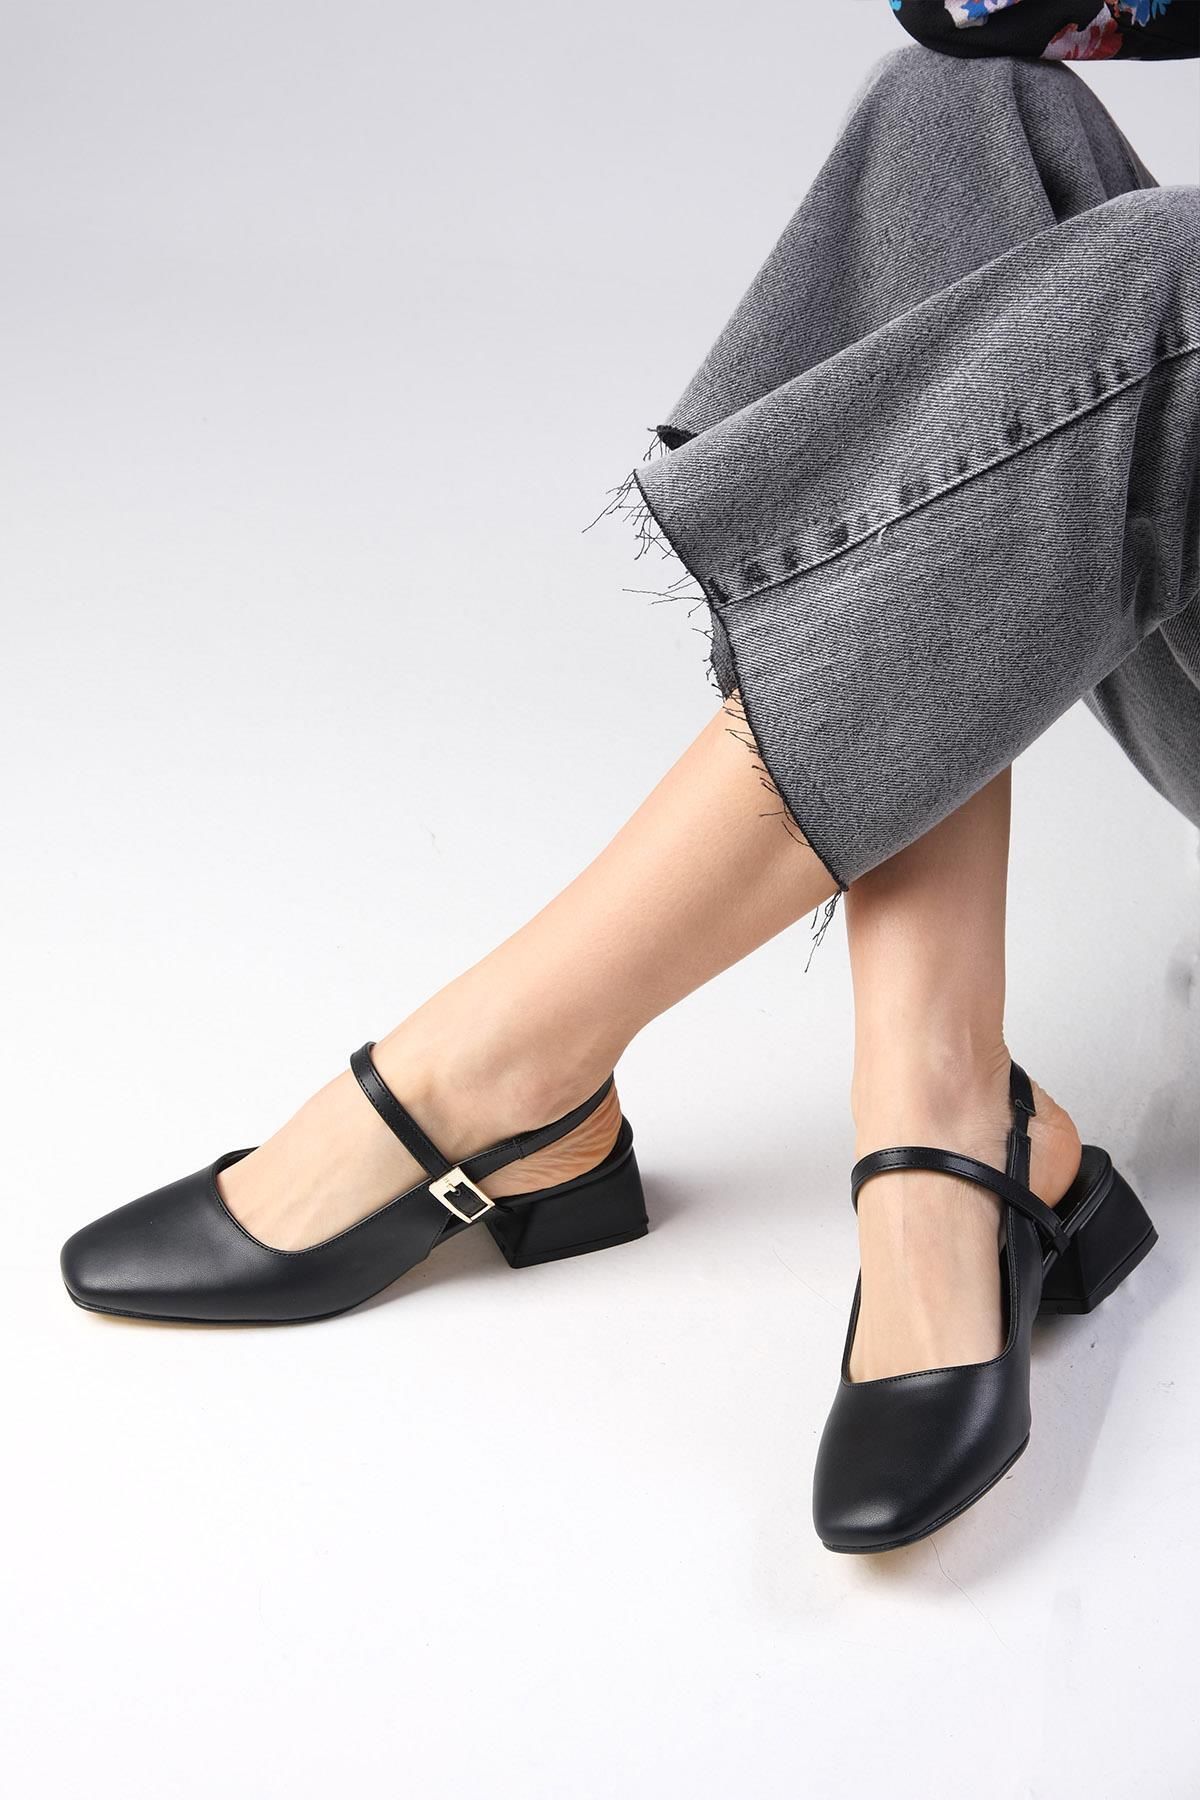 Mio Gusto Ella Siyah Renk Arkası Açık Kadın Kısa Topuklu Ayakkabı